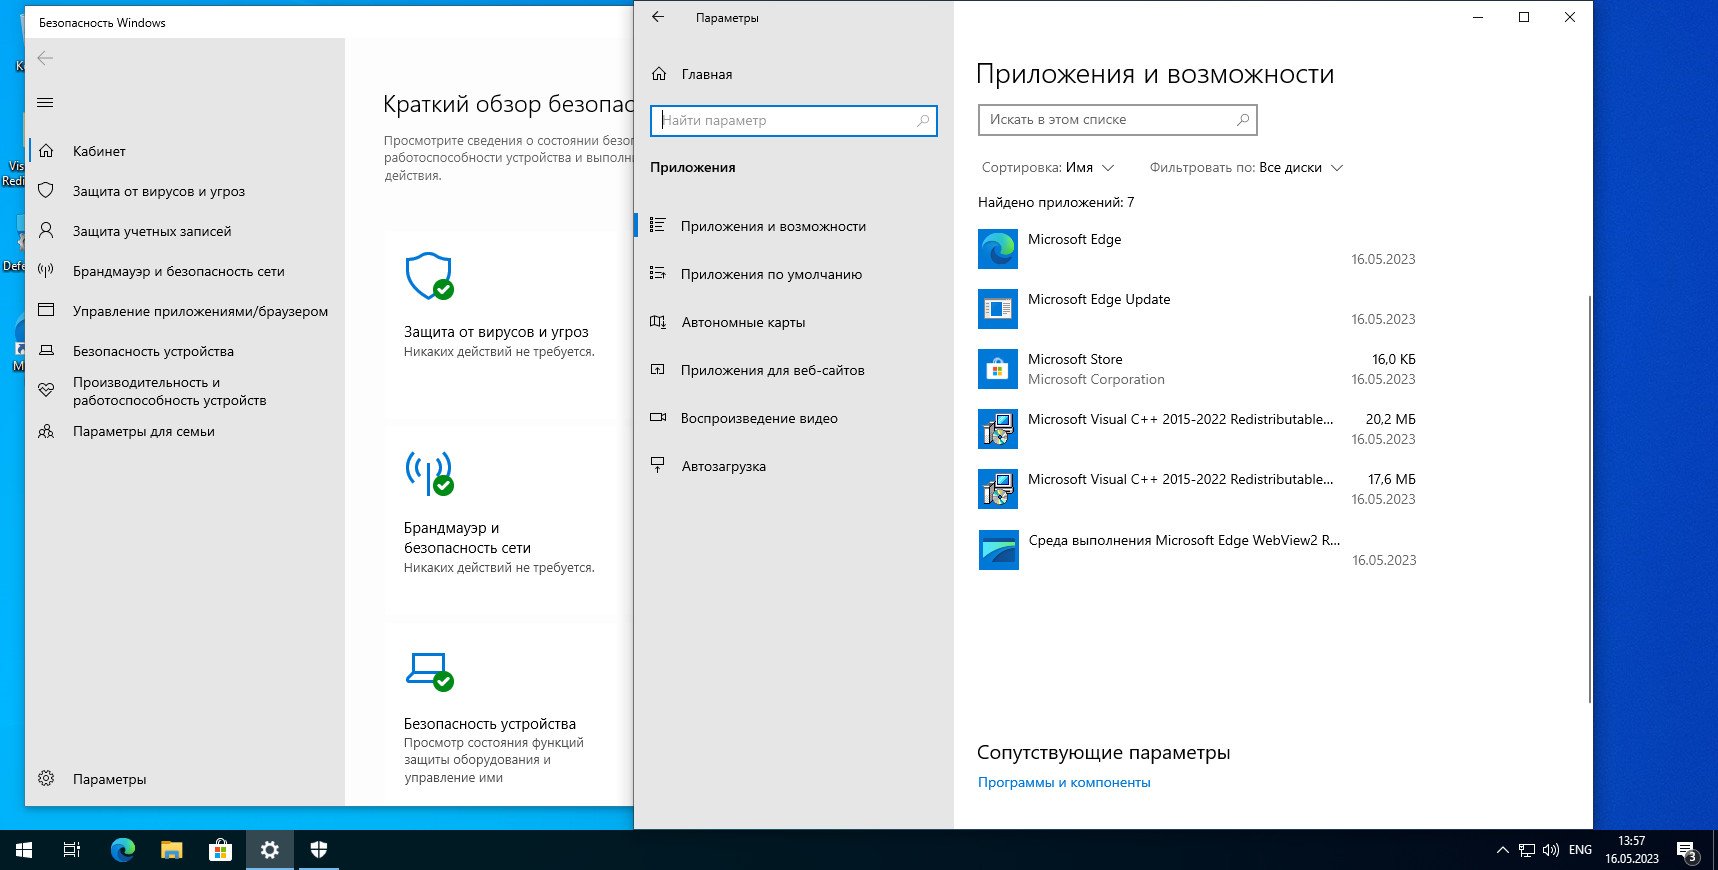 Windows 10 home 22h2 64 bit. Miracast Windows 10. Где находиться панель управления на Windows 10 Pro версия 22h2.